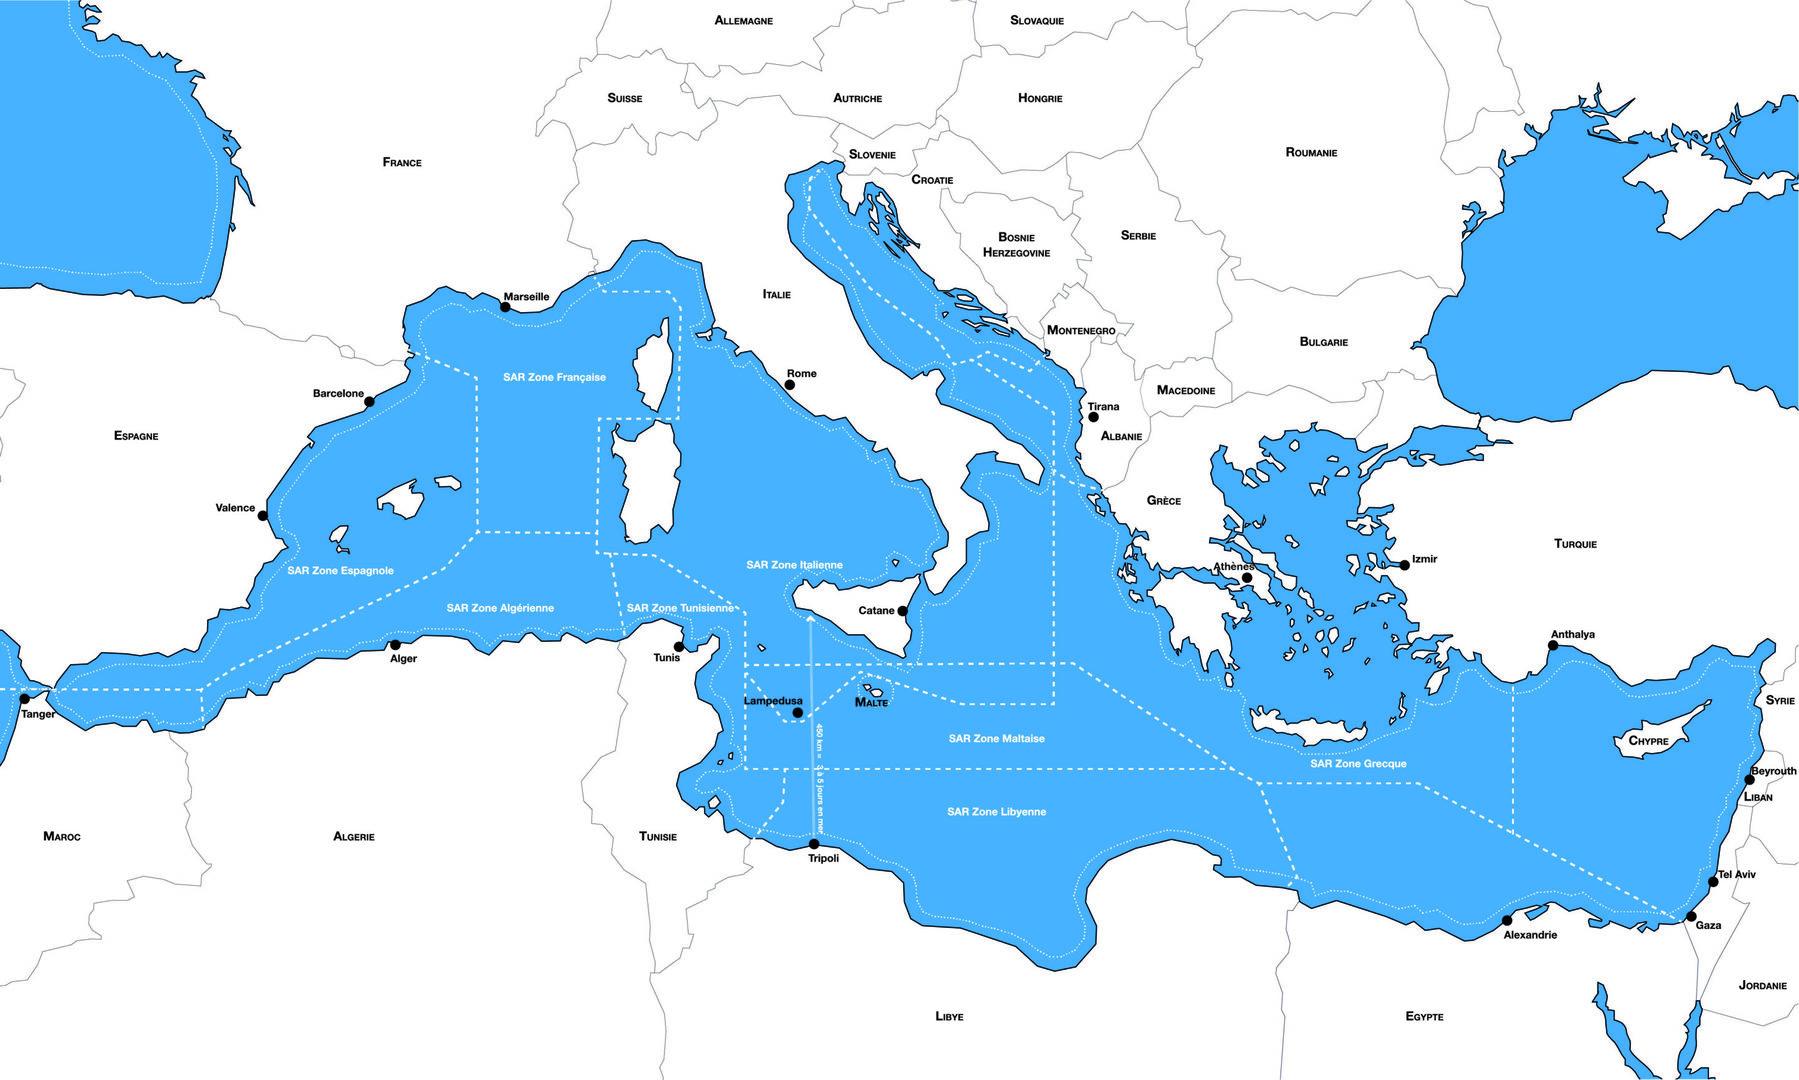 Carte de la Méditerranée montrant les différentes zones d'intervention selon les autorités compétentes.